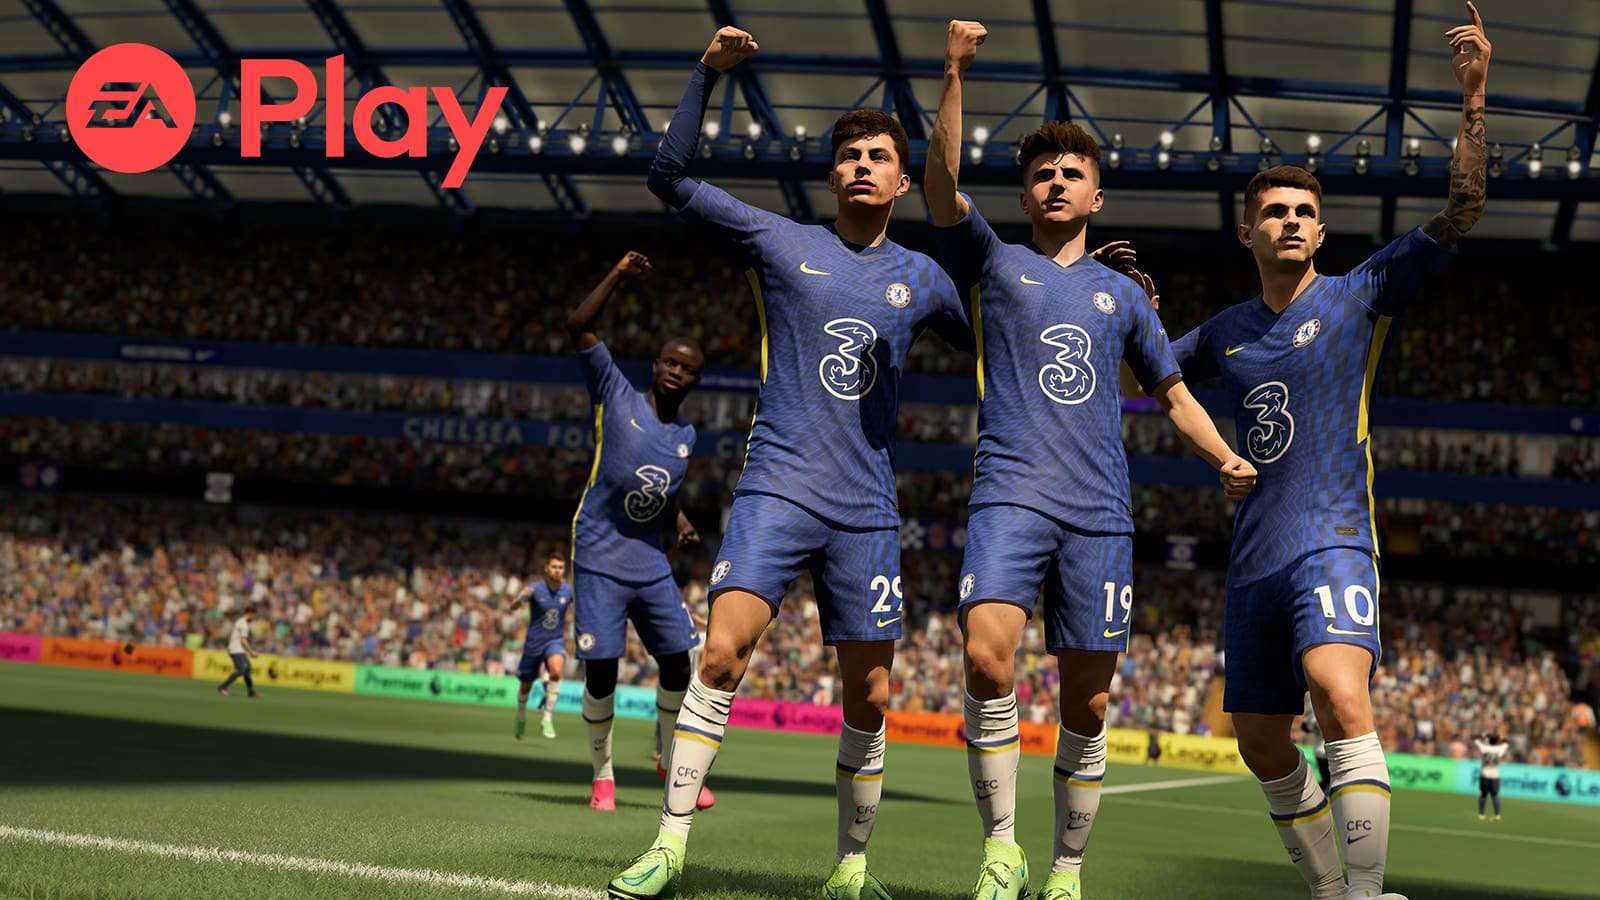 FIFA 22 EA Play